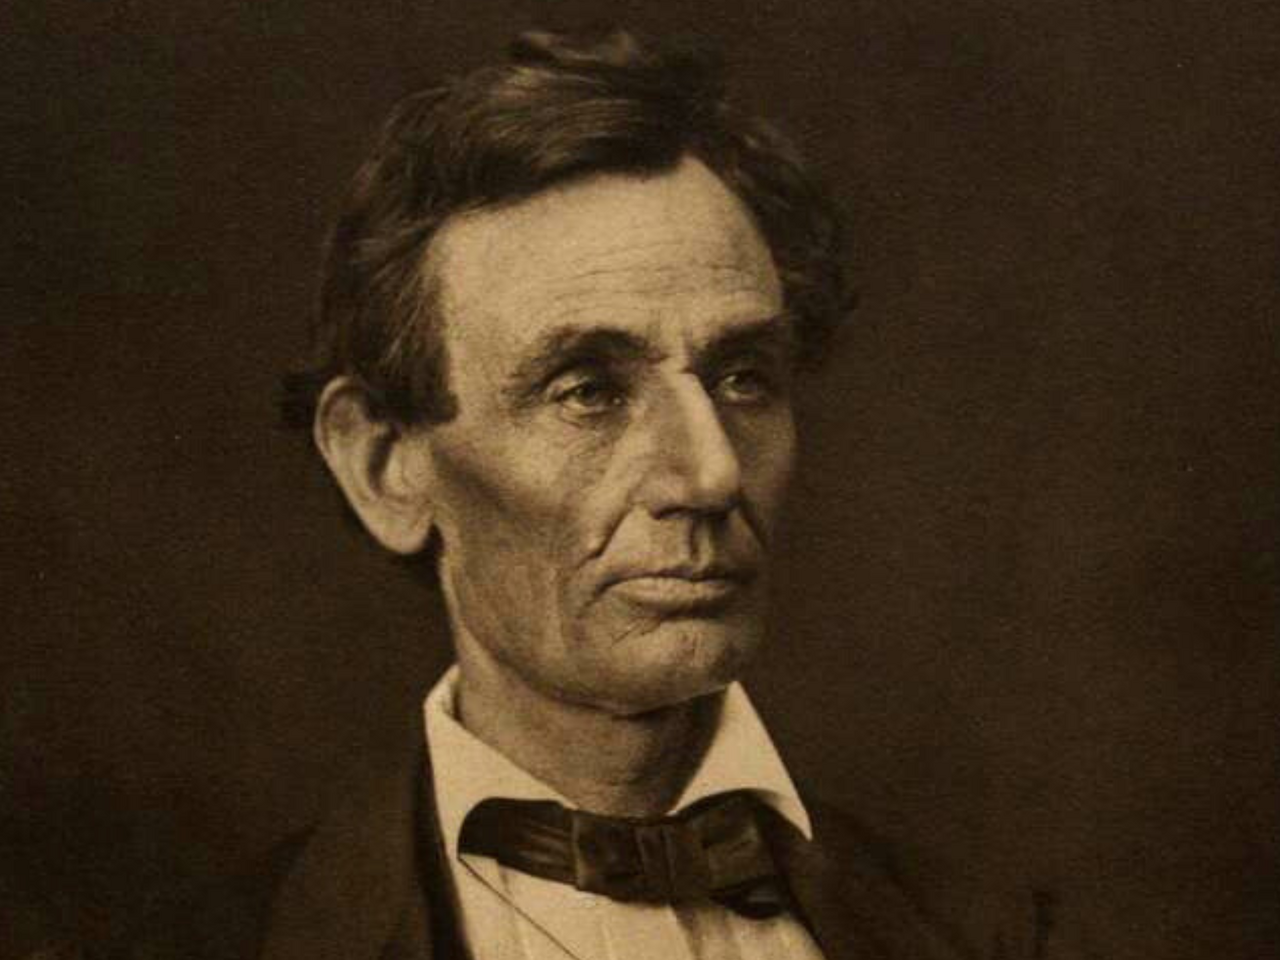 Abraham Lincoln portrait